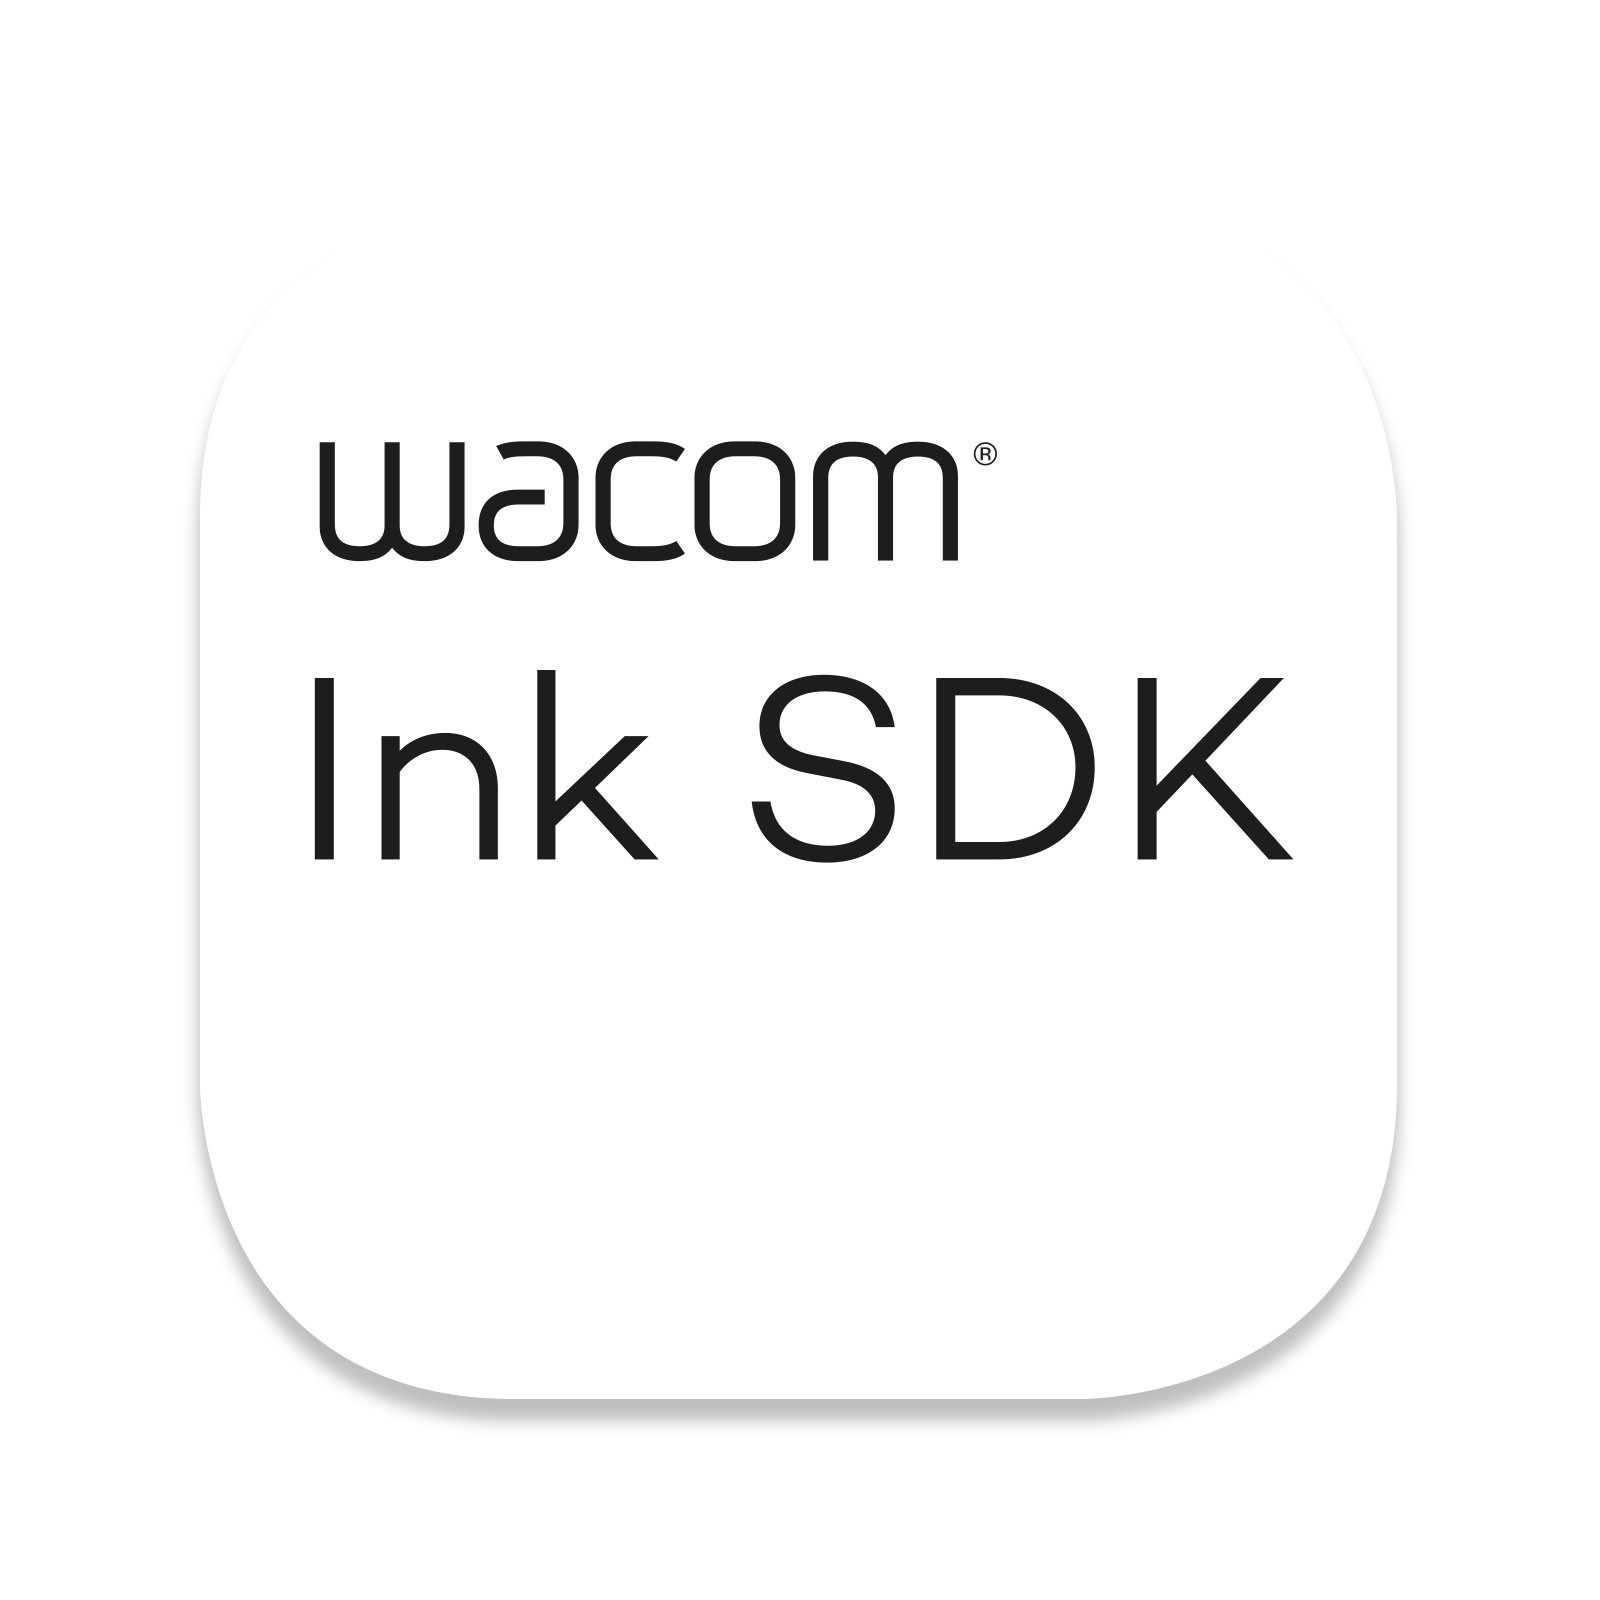 Wacom Ink SDK icon